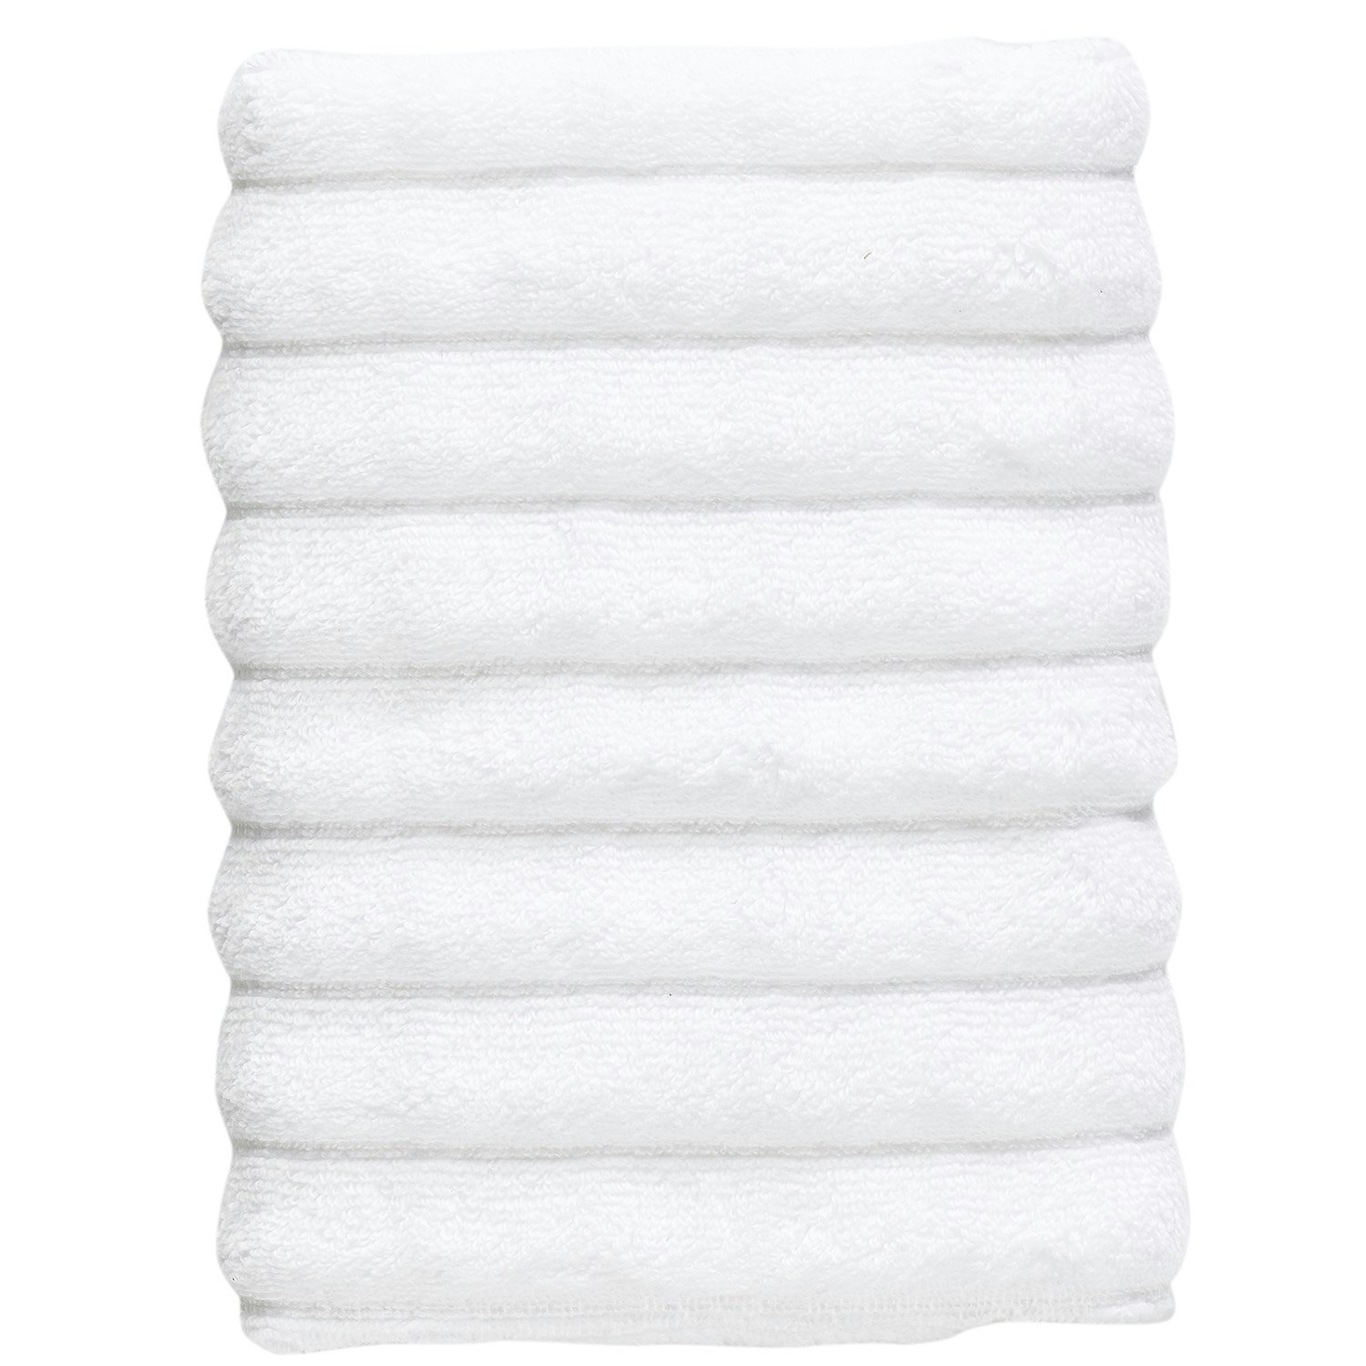 Inu Håndklæde 50x70 cm, Hvidt